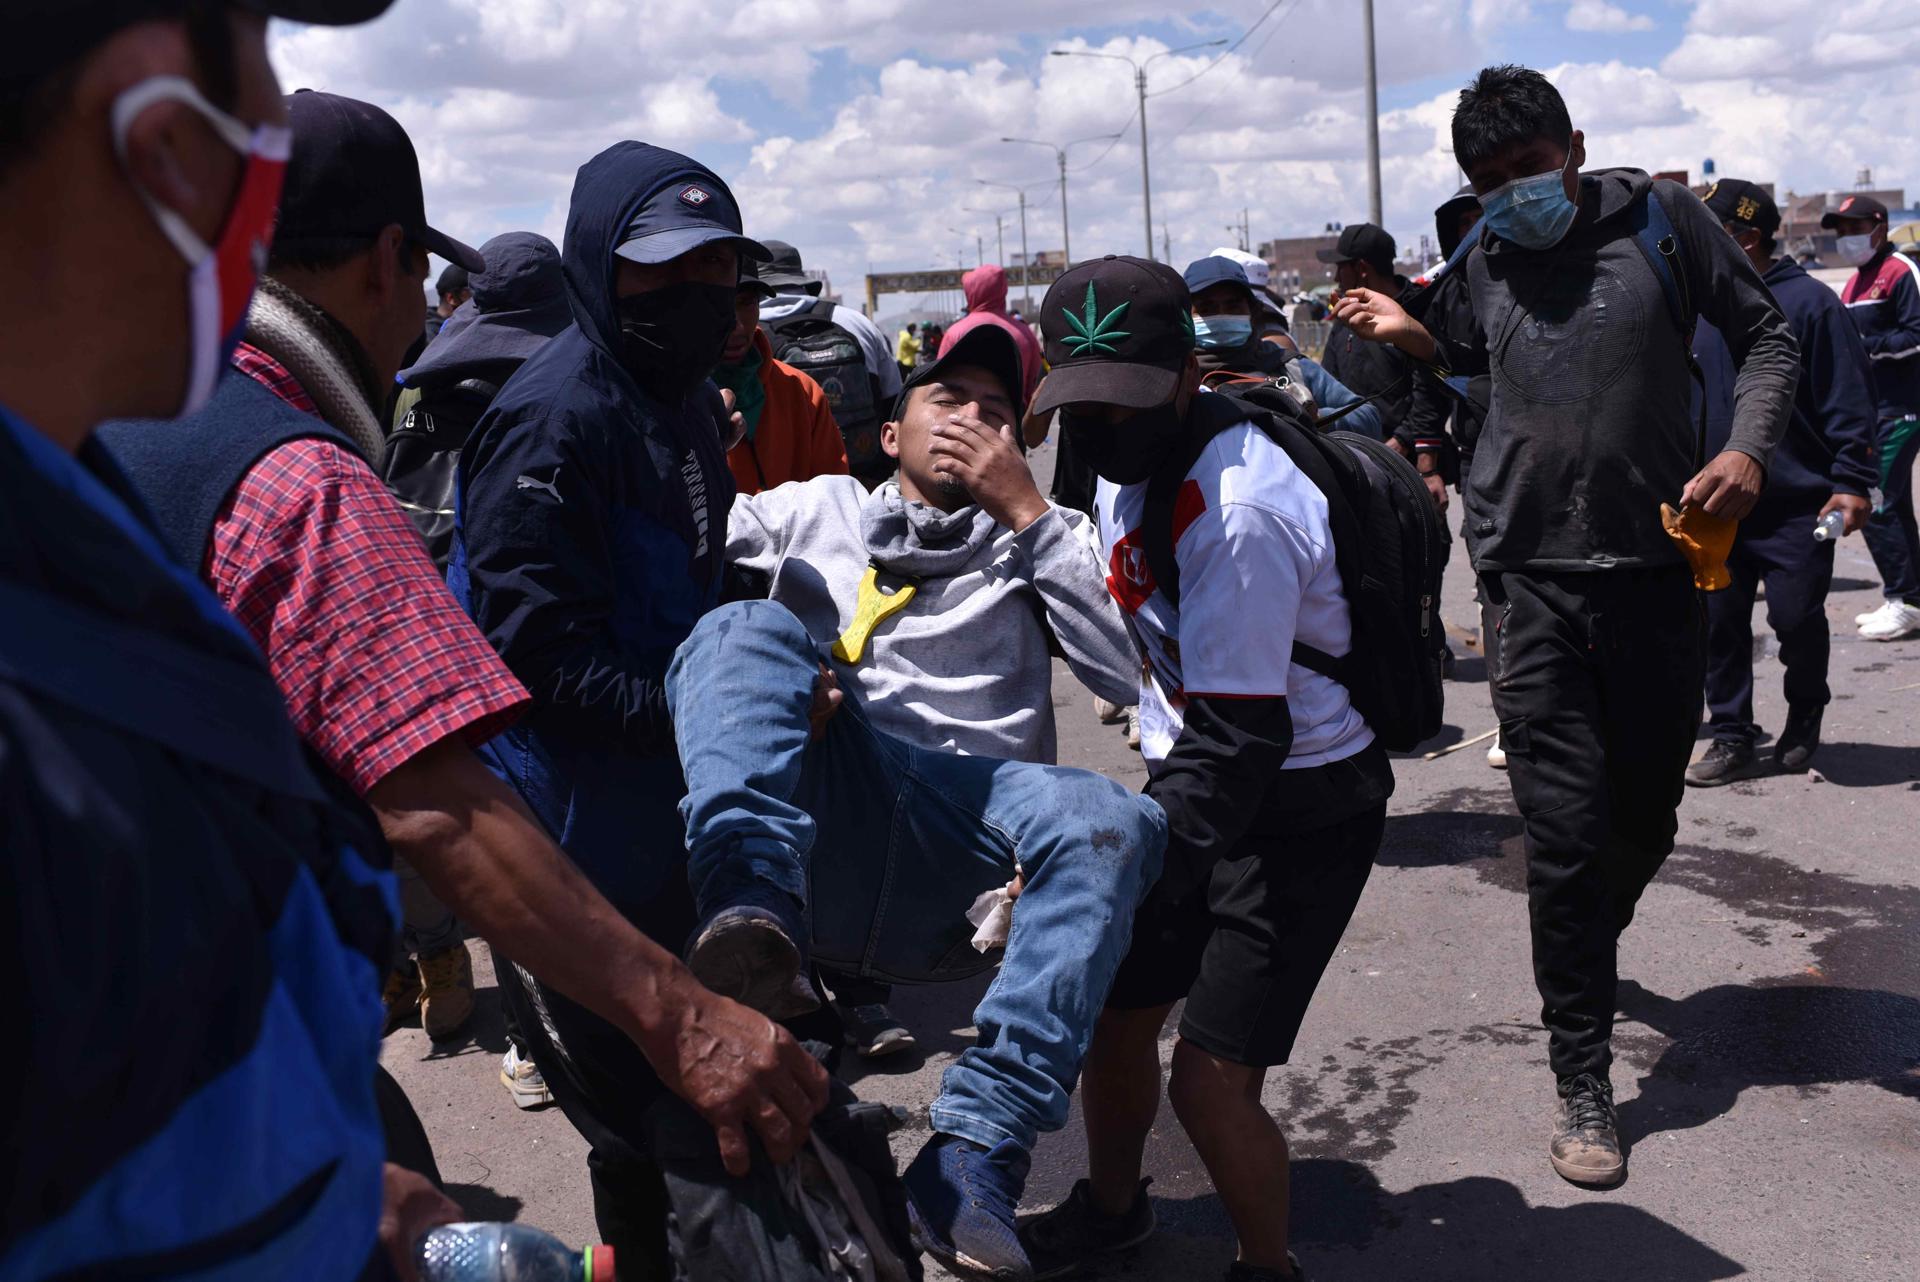 El primer ministro de Perú confirma que un policía fue "quemado vivo" por una turba